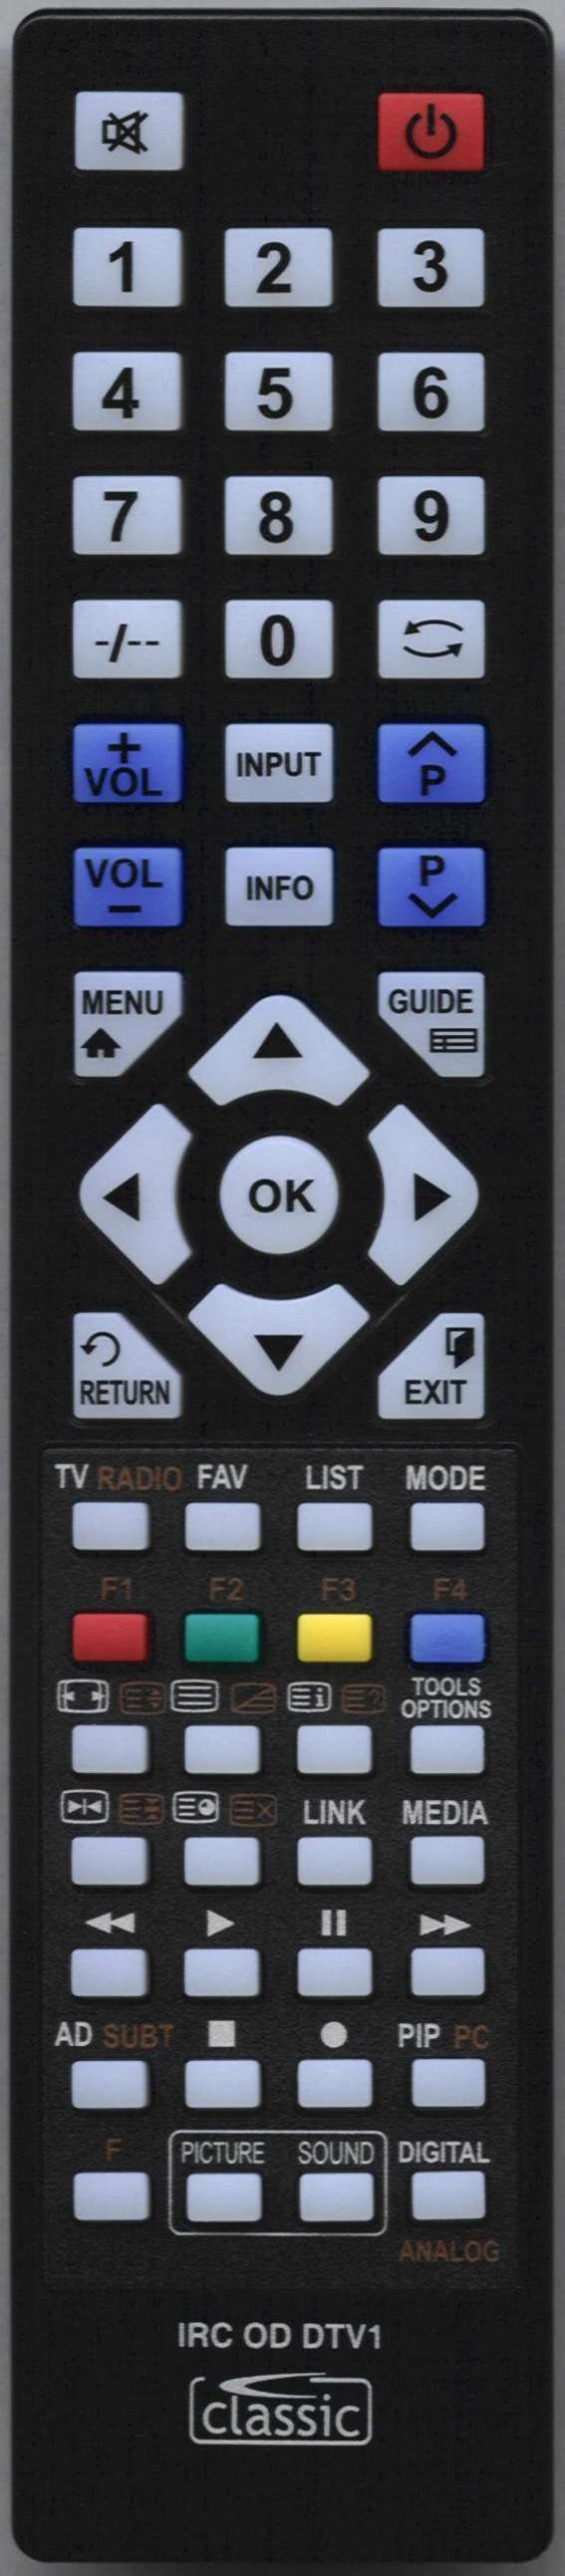 LUXOR 10052995 Remote Control Alternative